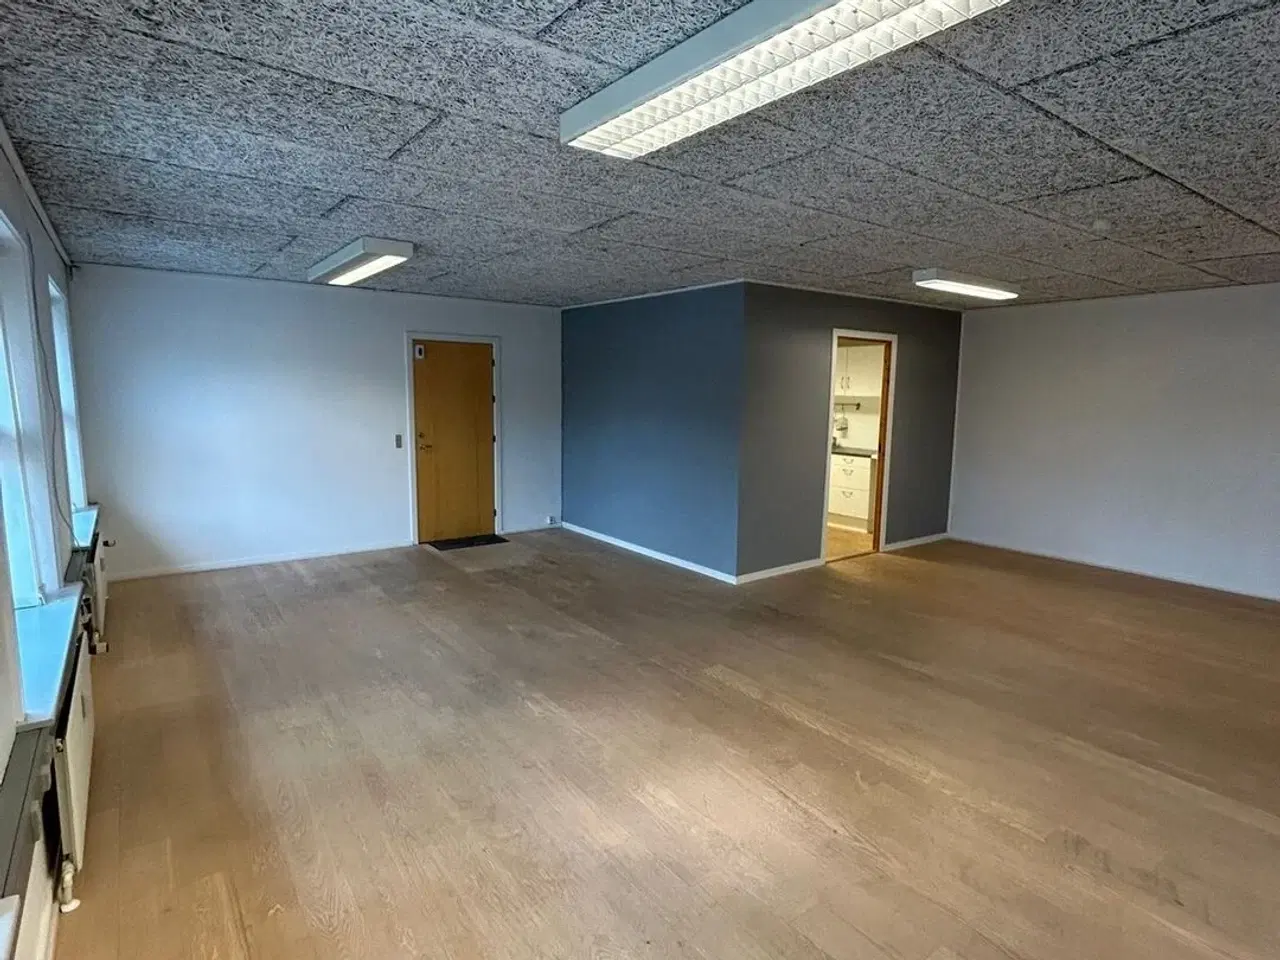 Billede 3 - 69 m² kontor nær motorvej E45